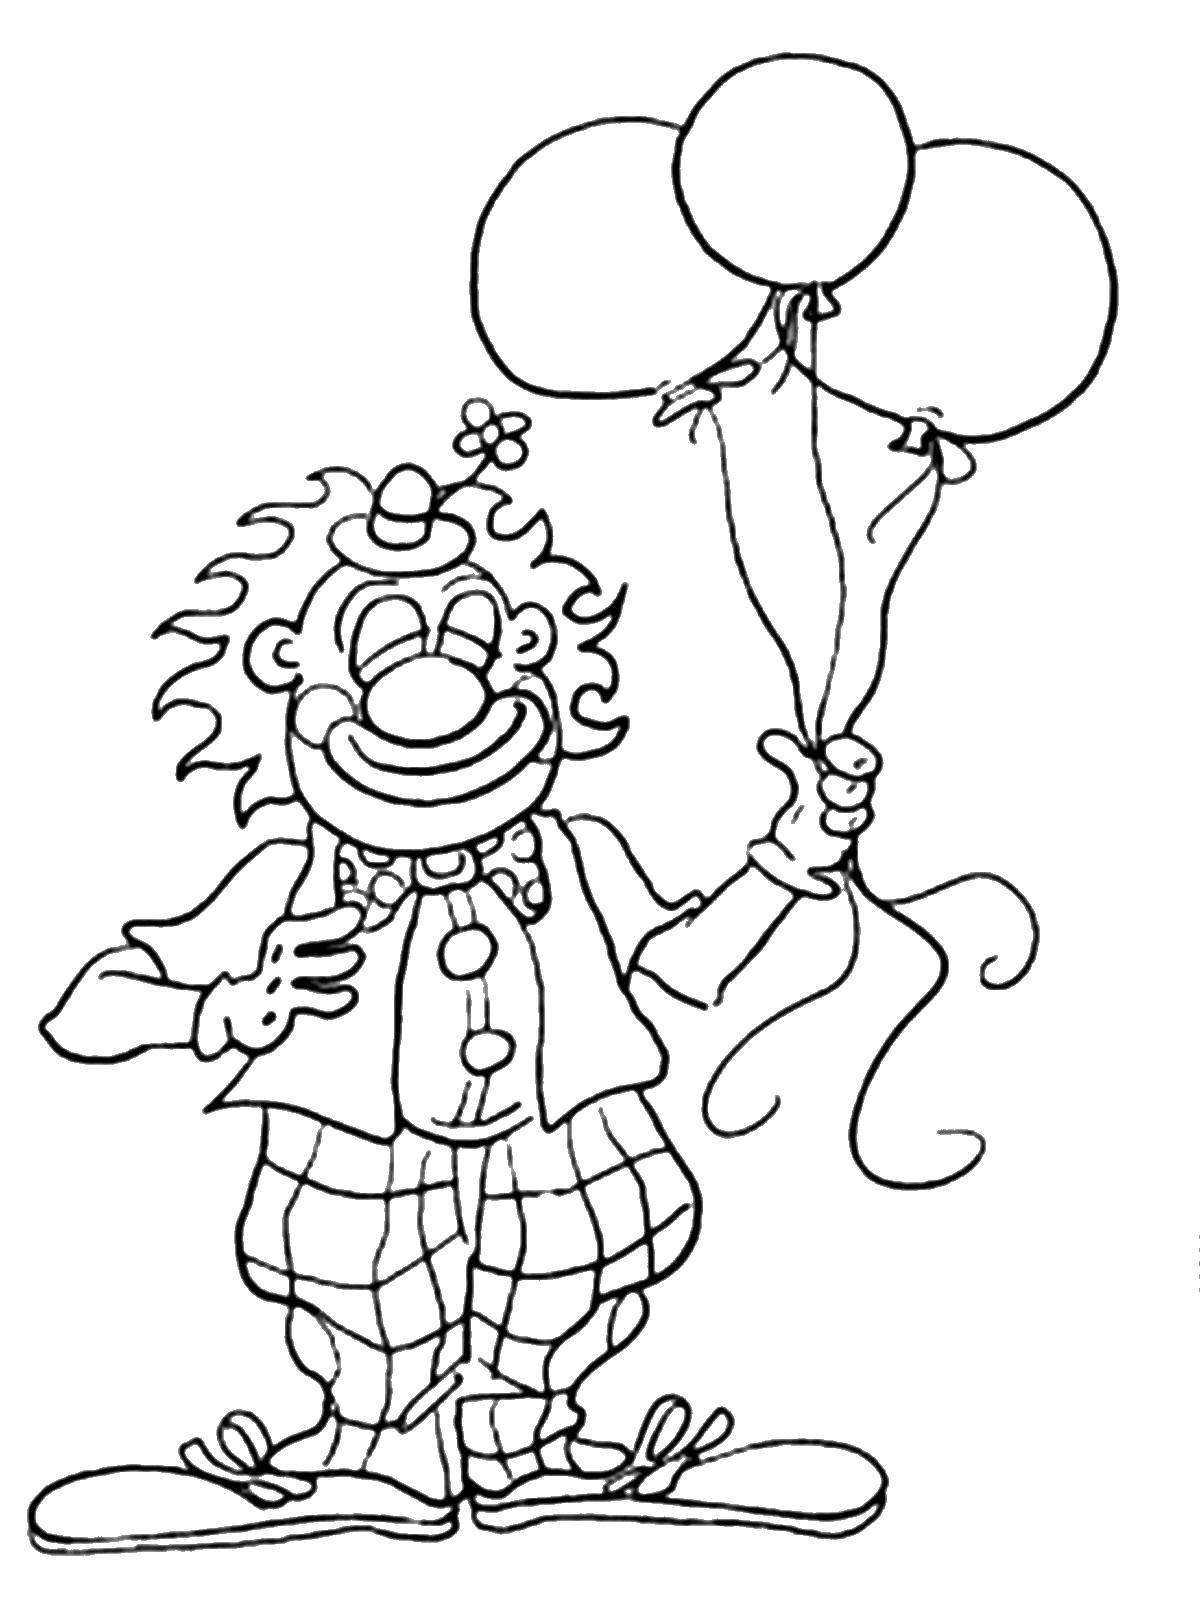 Название: Раскраска Клоун с шариками. Категория: профессии. Теги: профессии, клоун, шарики.